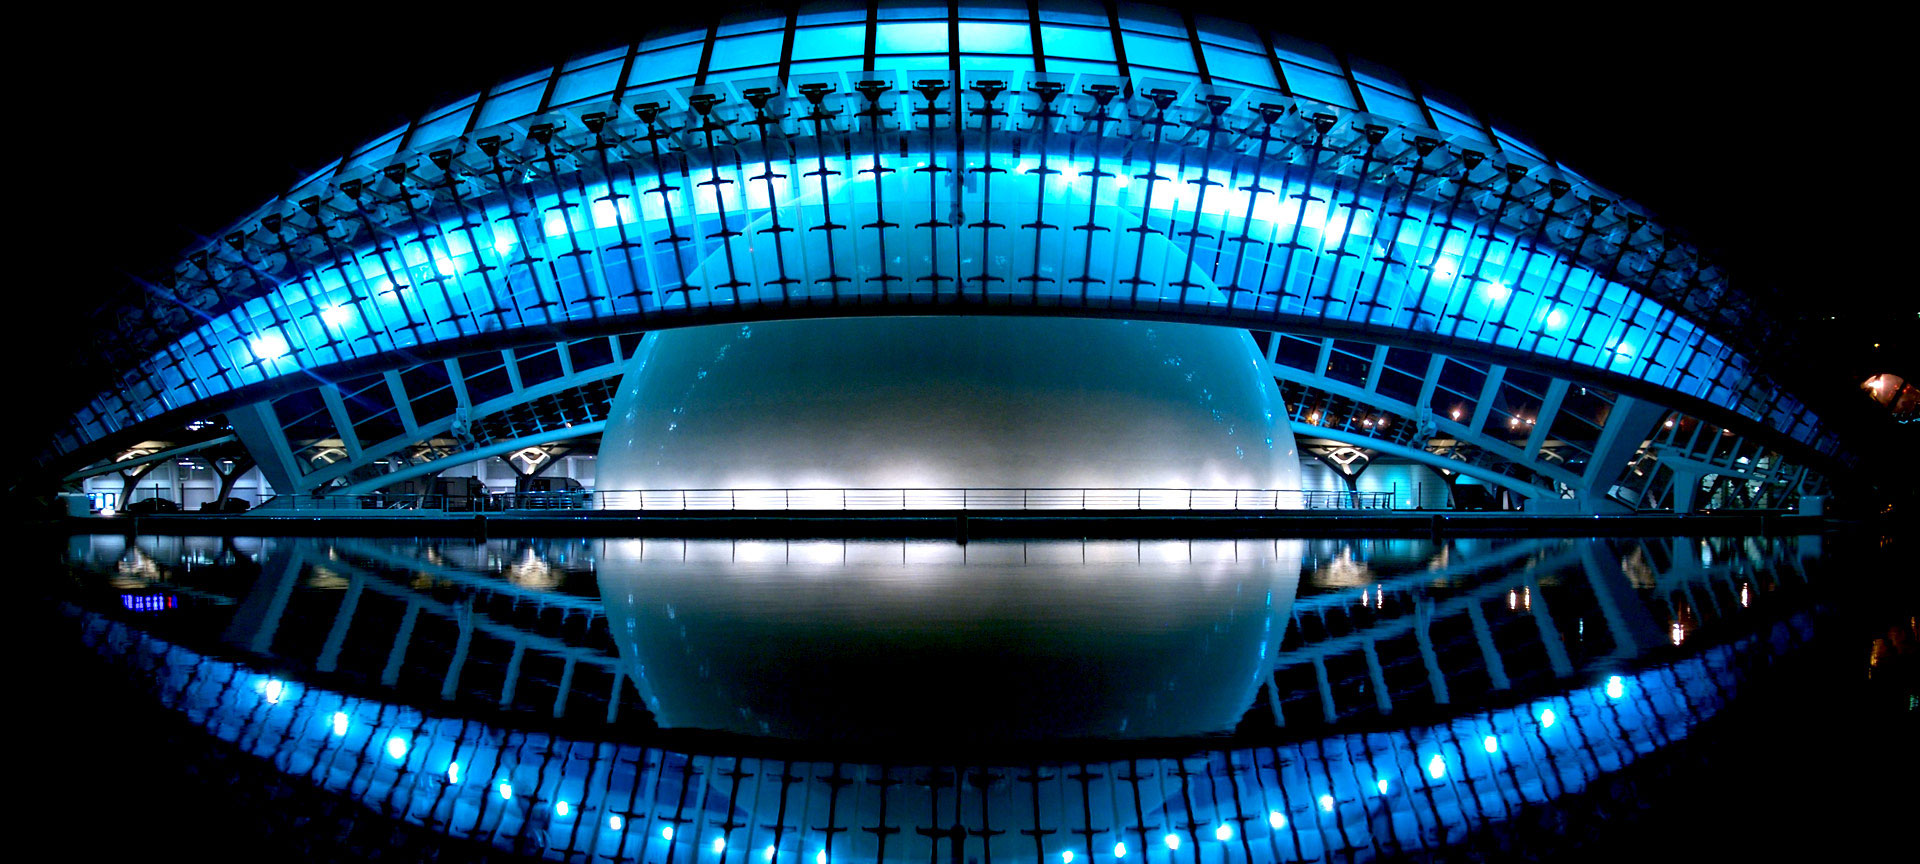 Moderne architectuur met blauwe verlichting en reflectie in water.